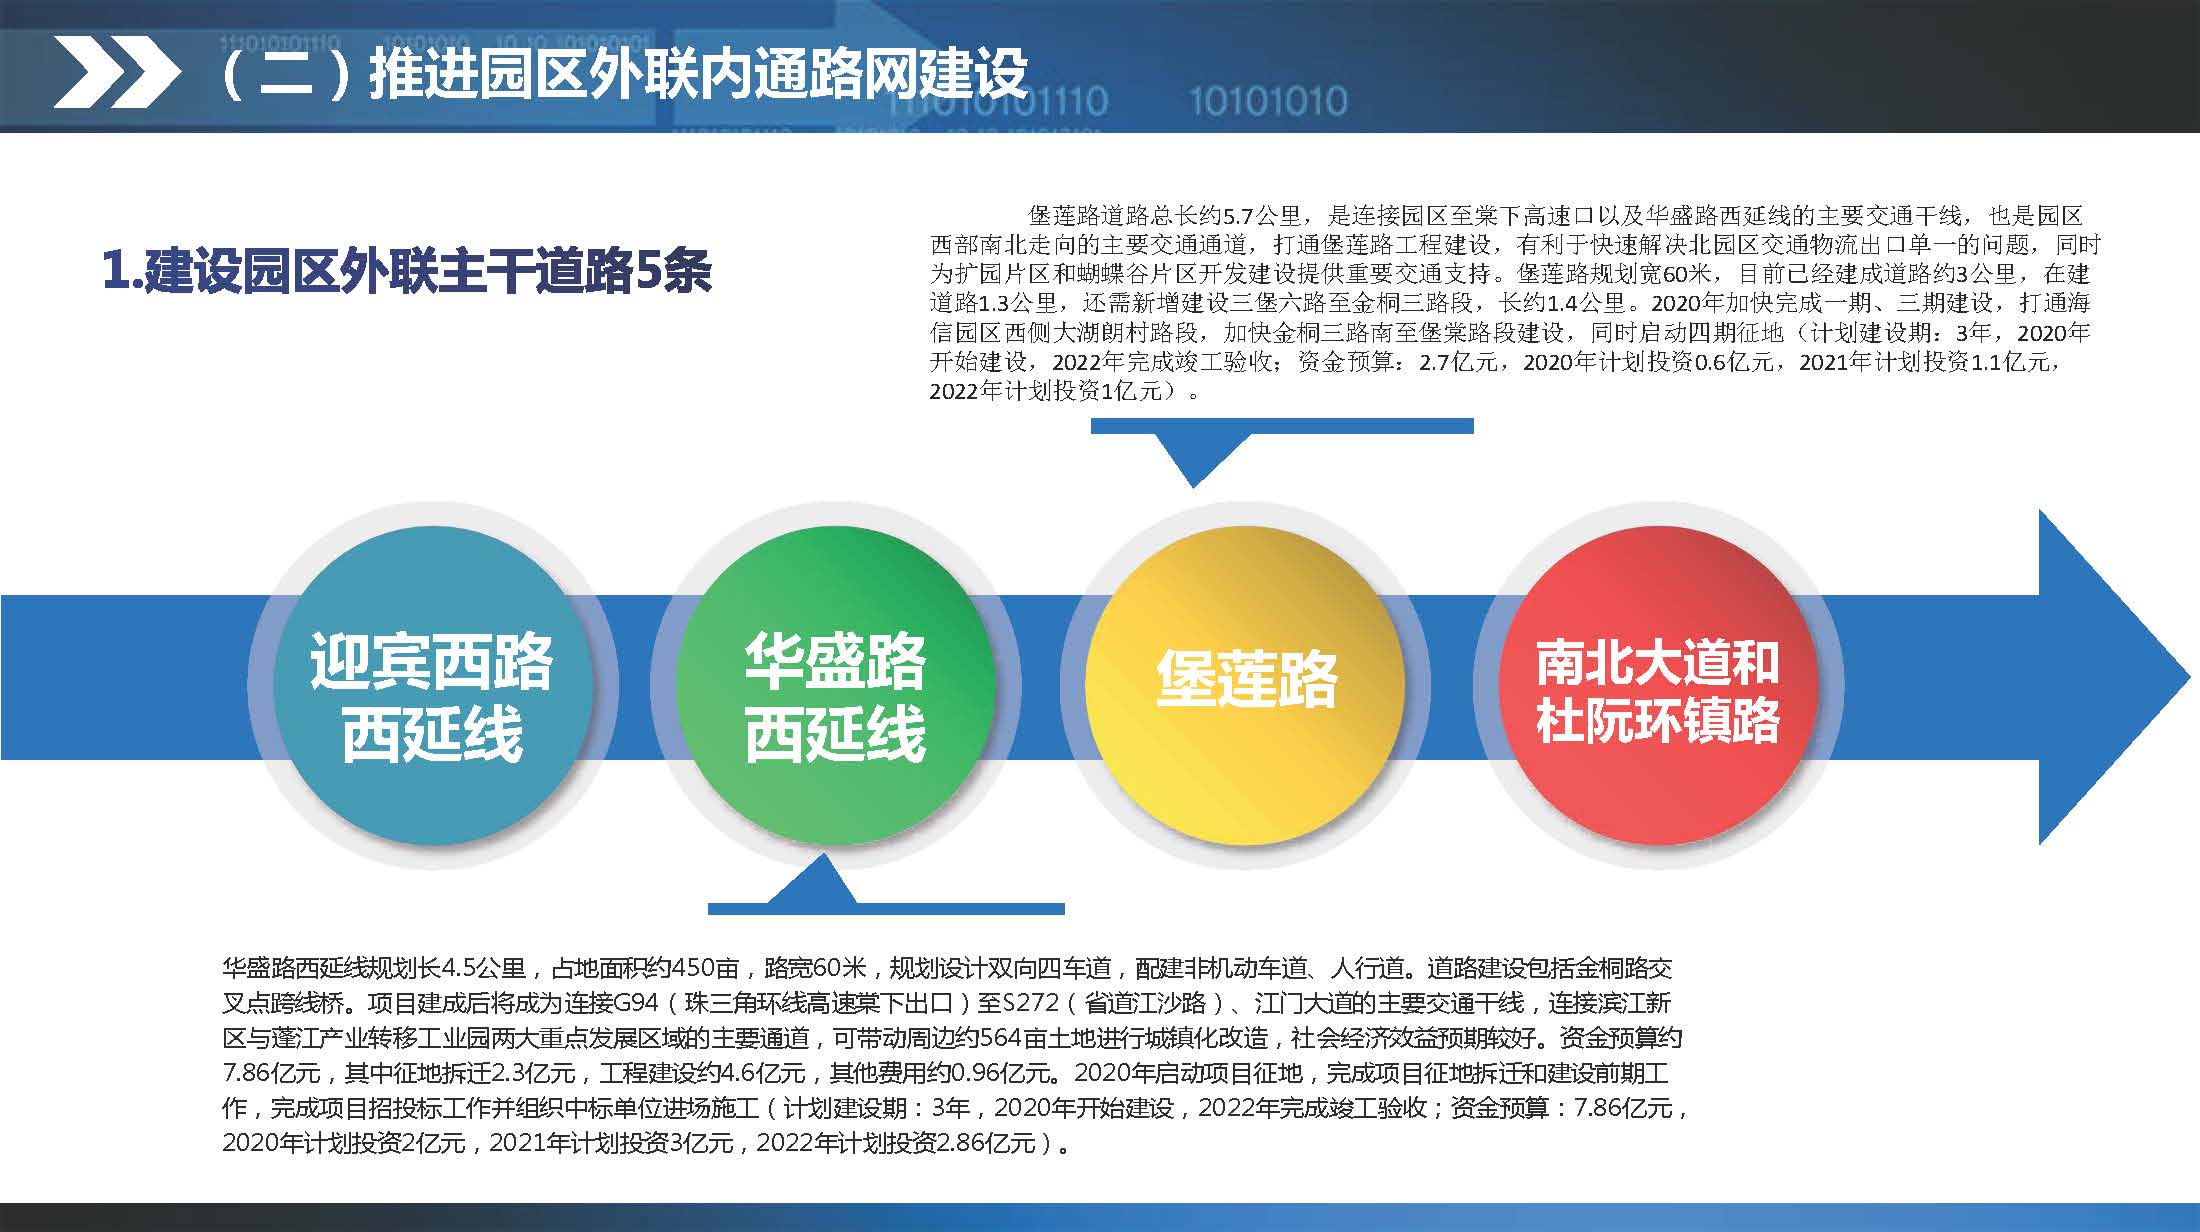 《江门蓬江产业转移工业园建设三年行动计划（2020-2022年）》图文解读_页面_11.jpg